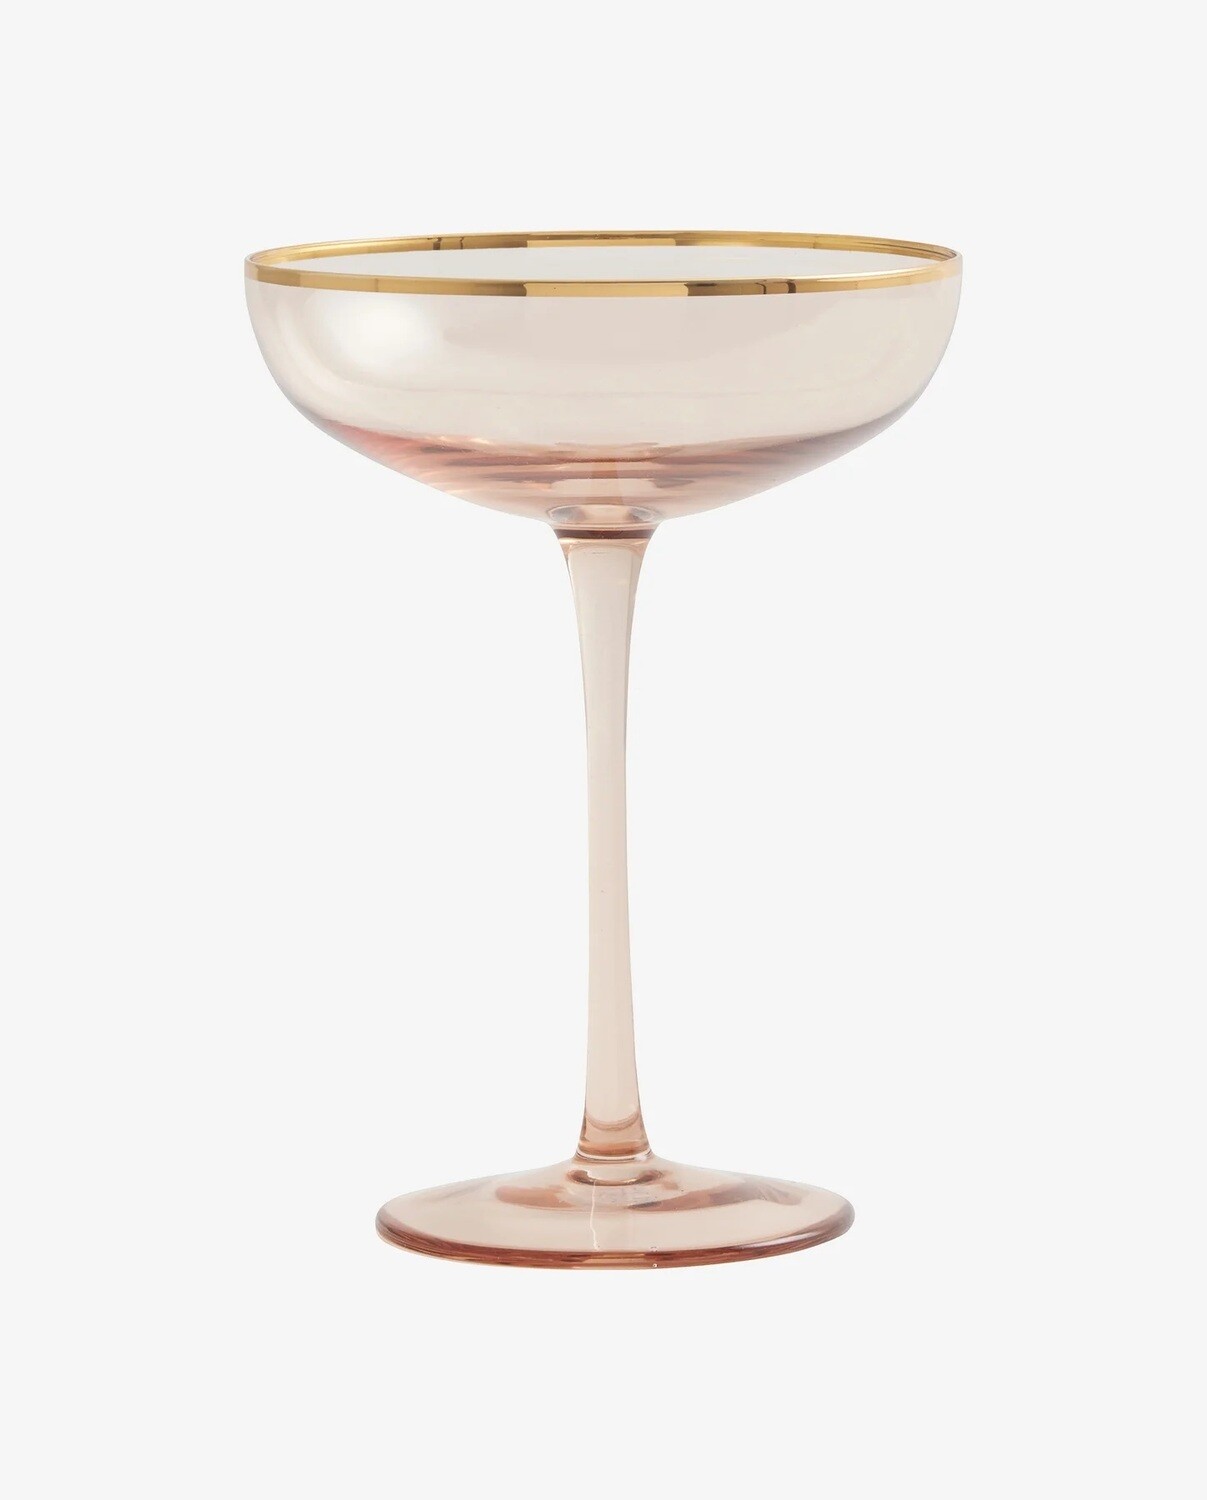 Šampanieša glāze persiku krāsā ar zelta maliņu